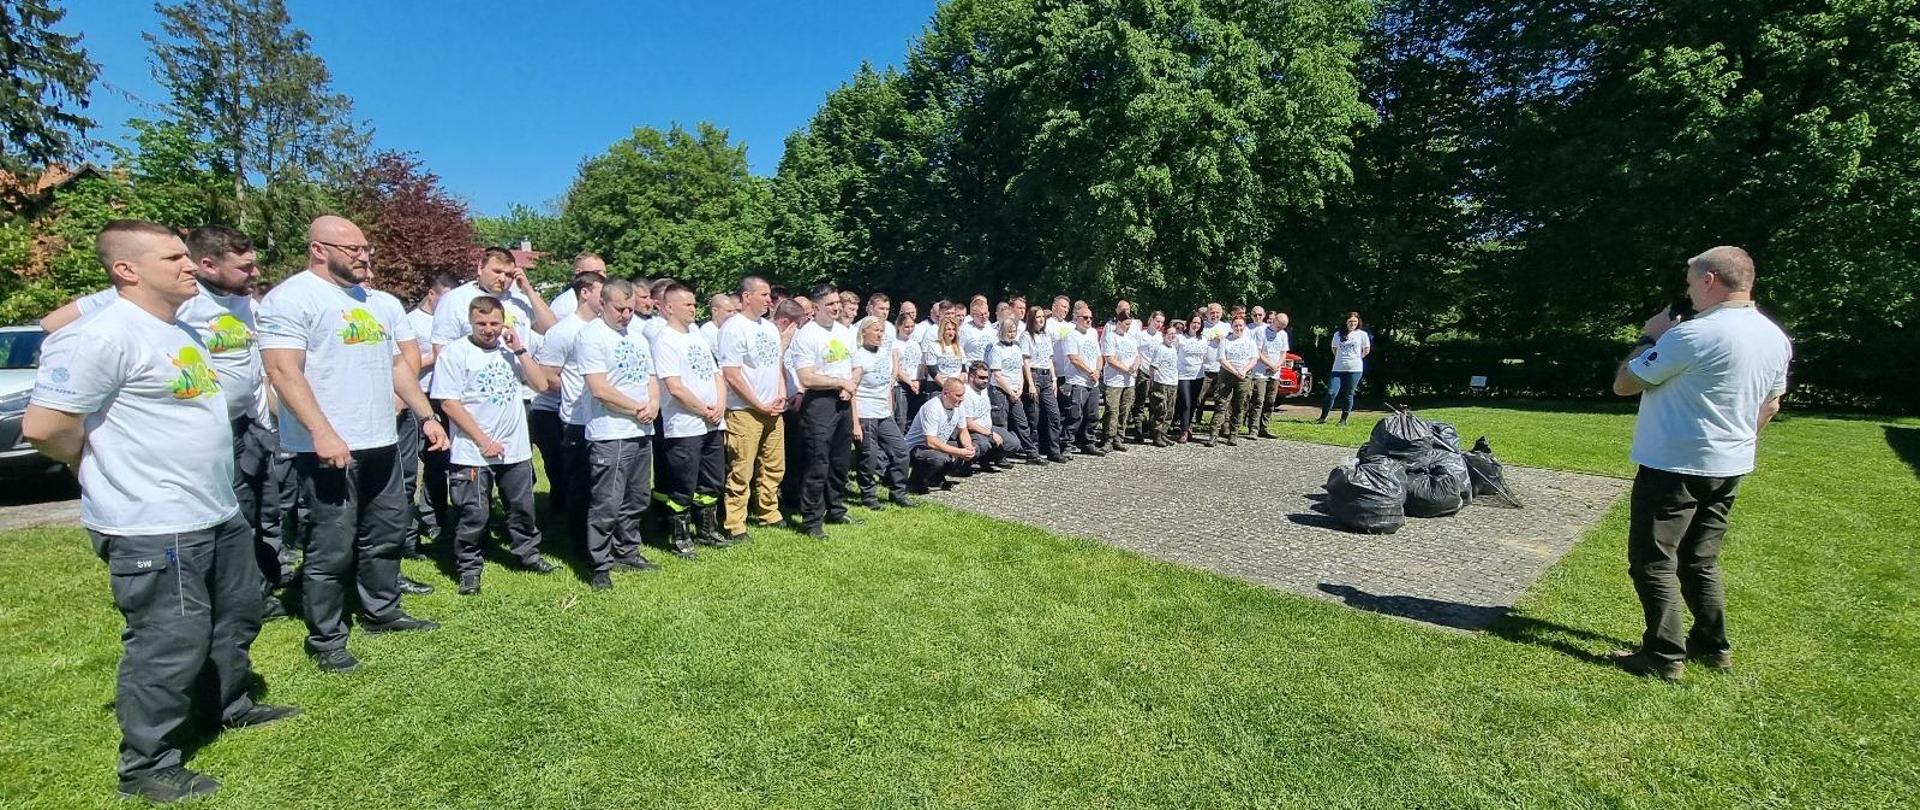 Prawie sto osób w białych koszulkach stoi na trawie, przed nimi mężczyzna tłumaczący zasady Operacji czysta rzeka. W tle drzewa i błękitne niebo